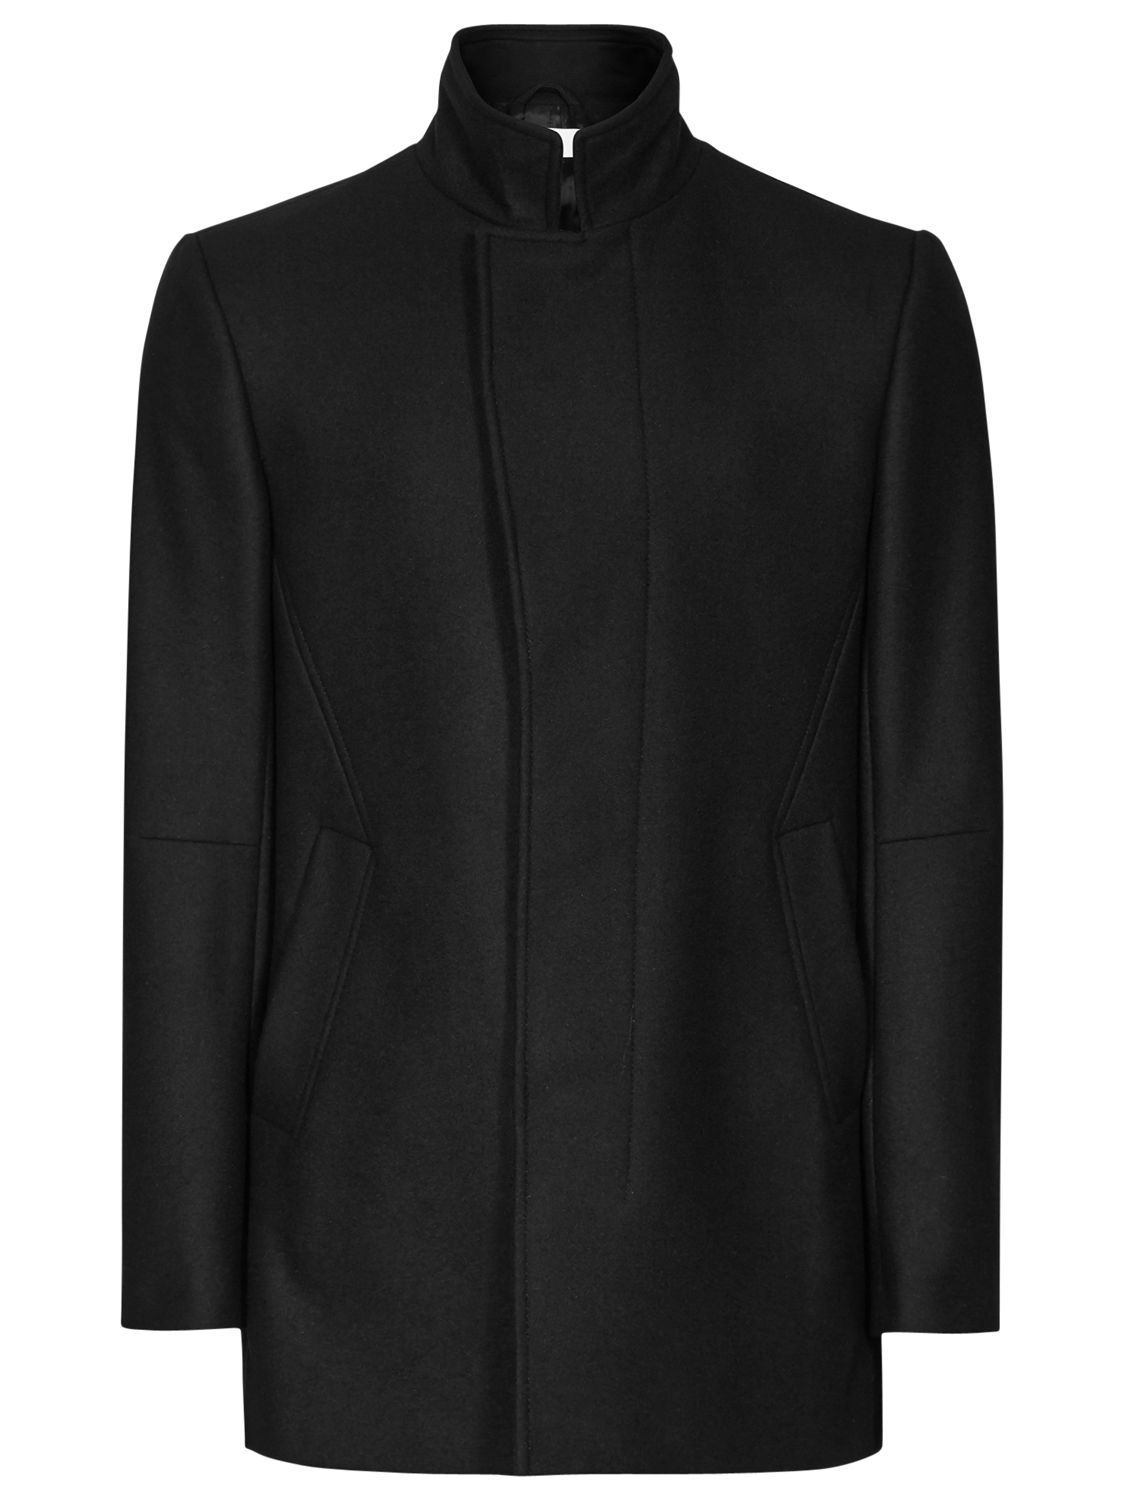 Reiss Langham Wool Blend Coat, Black